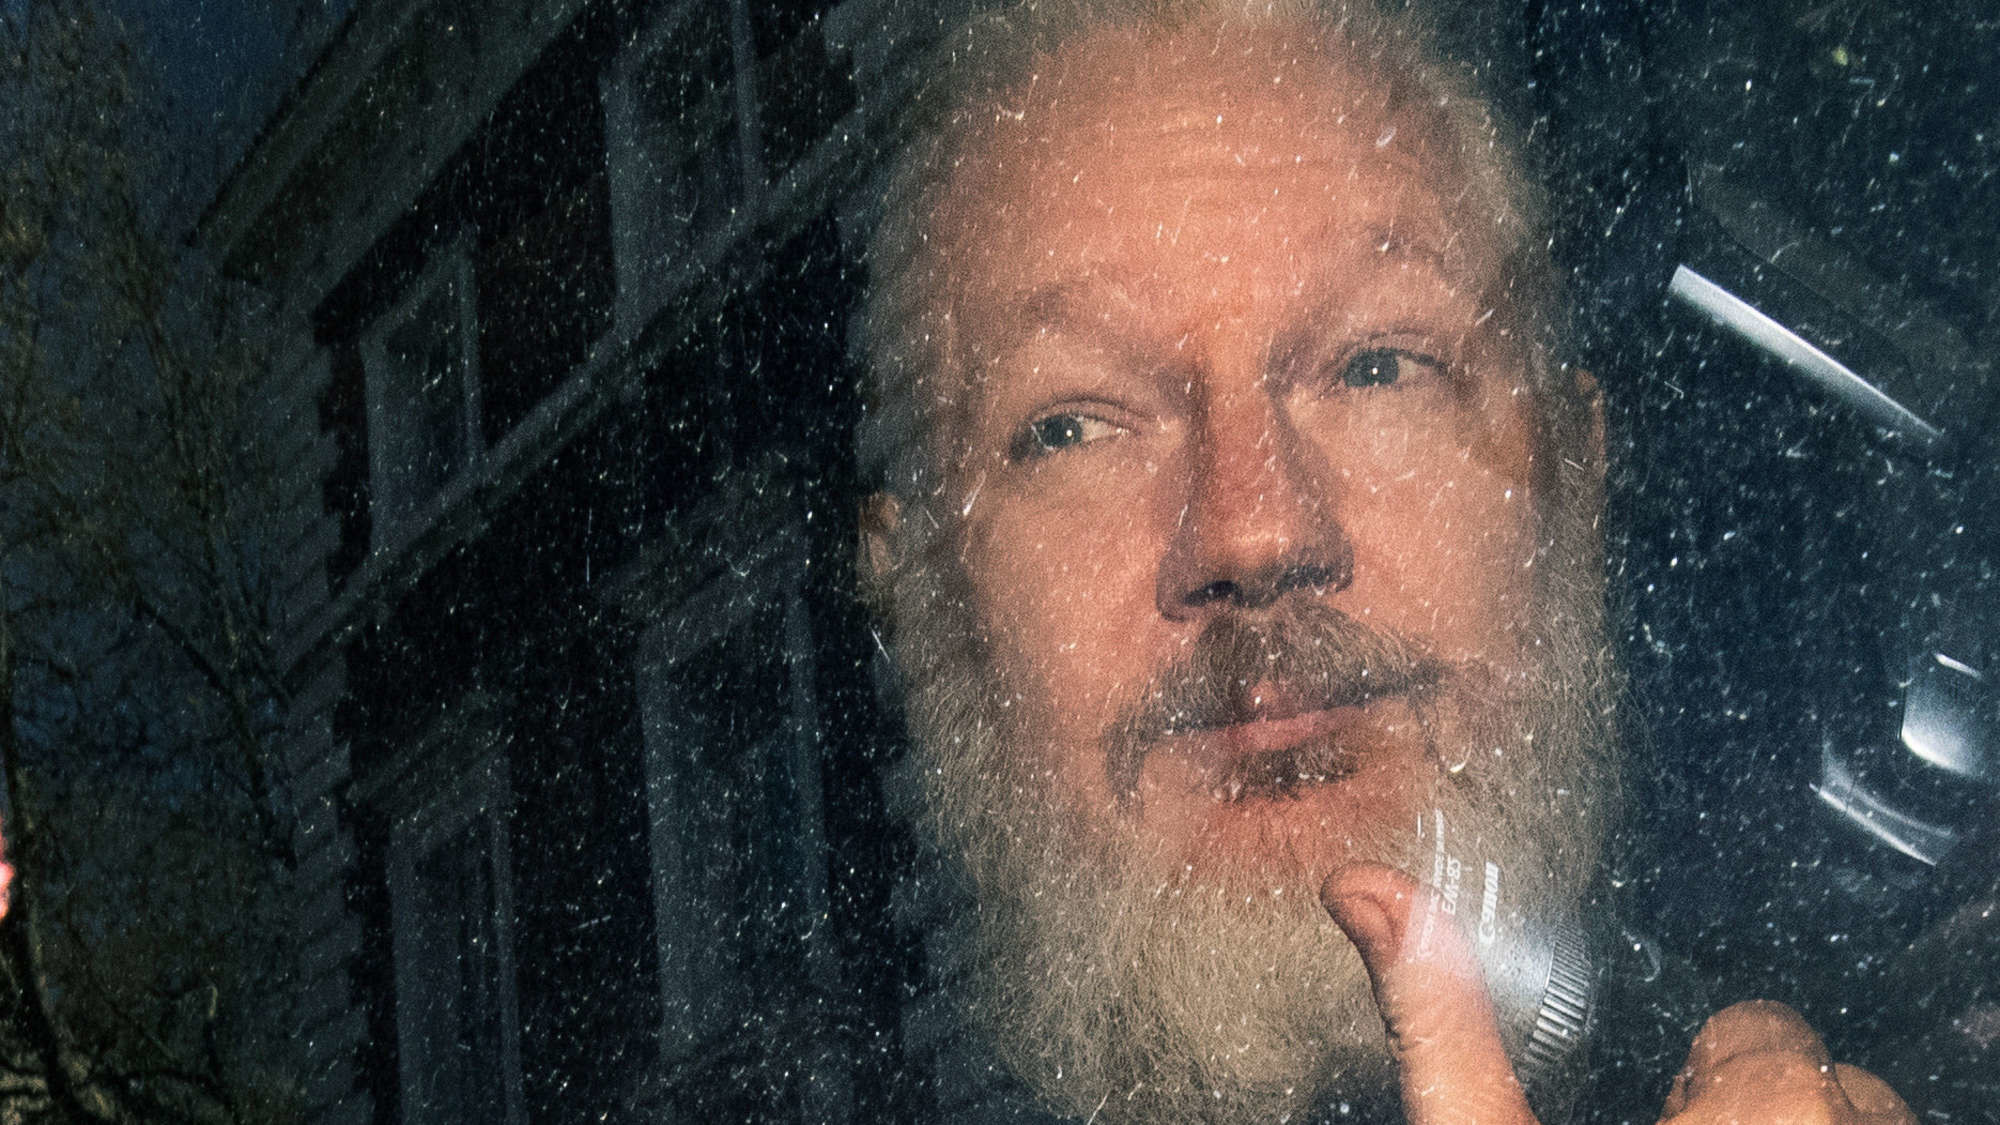 Der australische politische Aktivist und WikiLeaks-Sprecher wird von der britischen Polizei festgenommen. Assange, gegen den in Schweden Vergewaltigungsvorwürfe erhoben wurden, lebte sieben Jahre lang in der ecuadorianischen Botschaft in London. Ecuador hatte ihm politisches Asyl gewährt. Der neue ecuadorianische Präsident Lenín Moreno entzog ihm nun das Asylrecht und aberkannte ihm die ecuadorianische Staatsbürgerschaft. Er erlaubte es der britischen Polizei, die Botschaft zu betreten und Assange festzune…